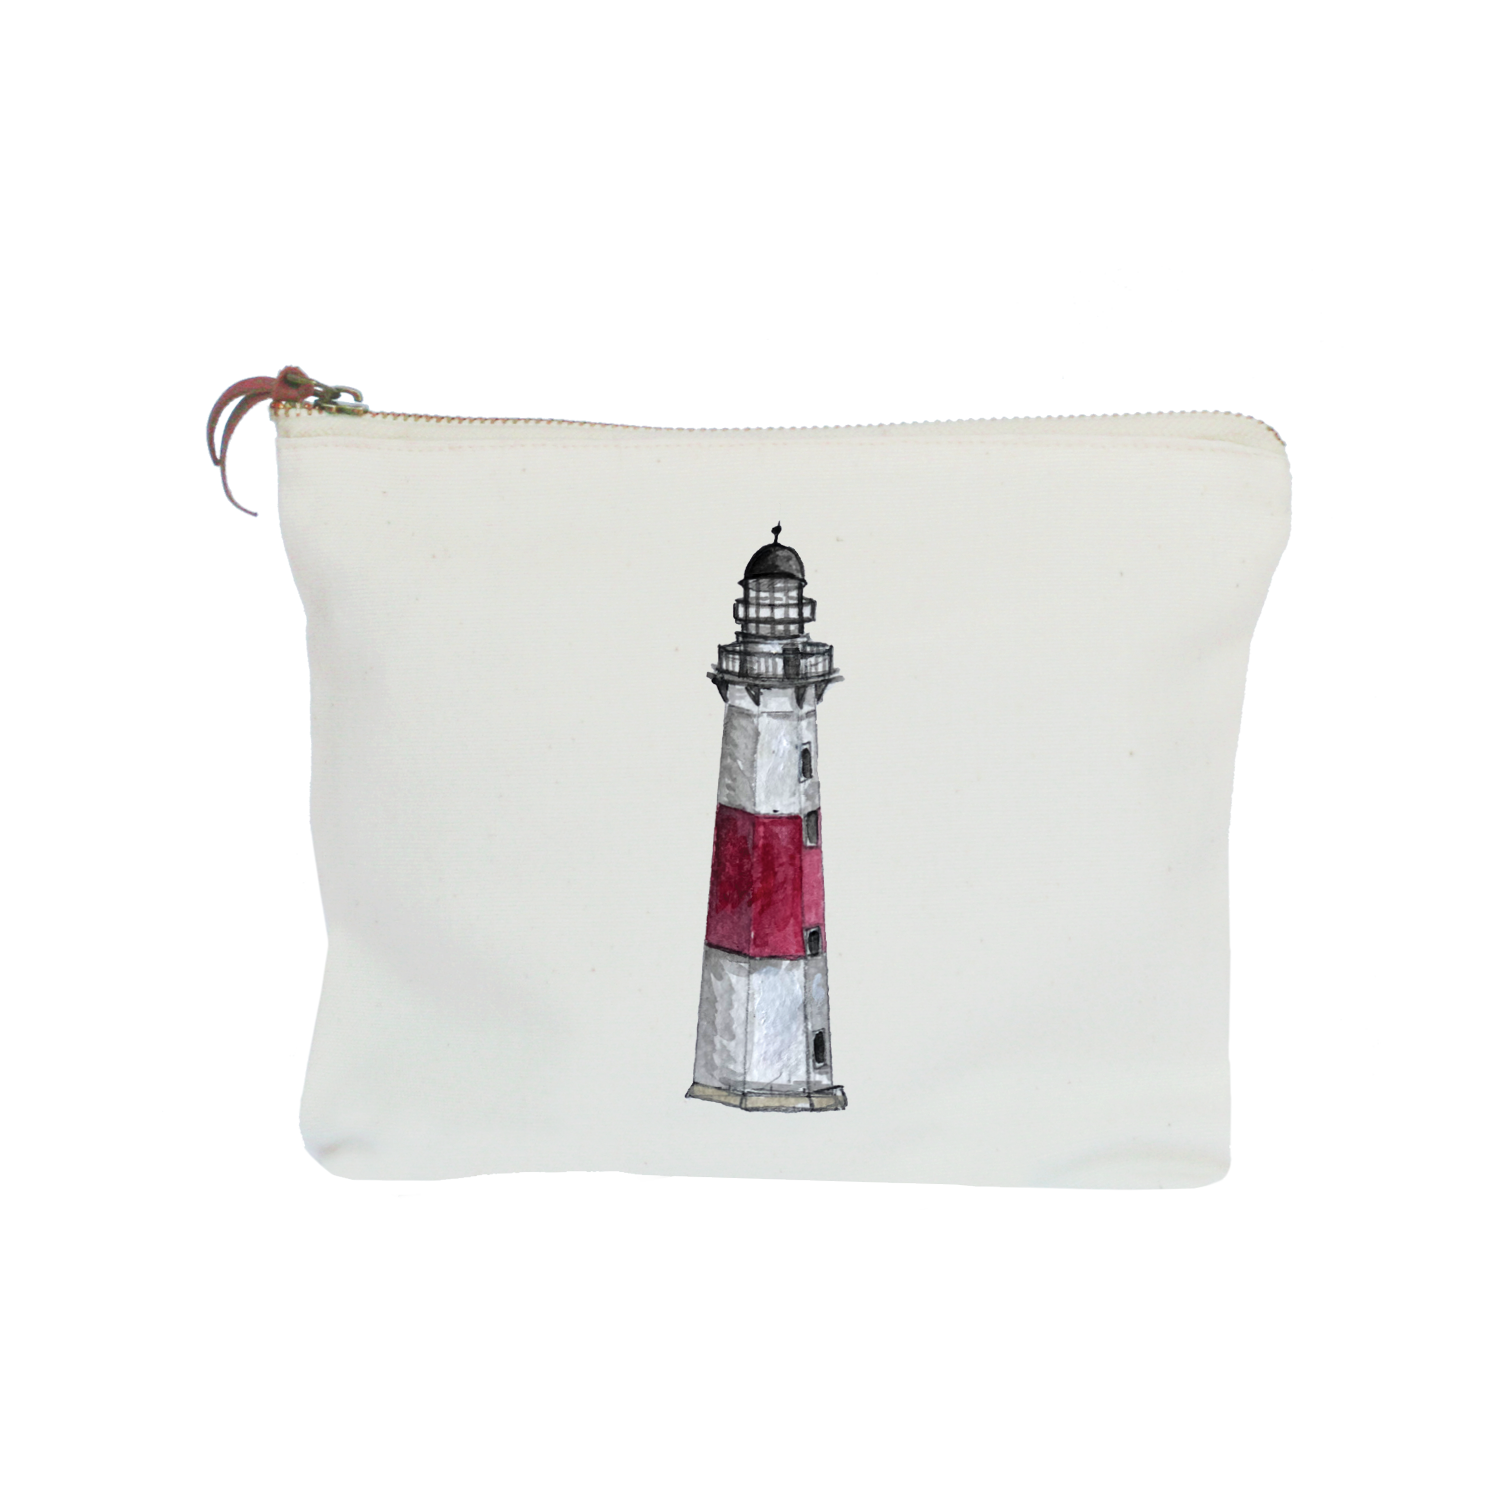 montauk lighthouse zipper pouch